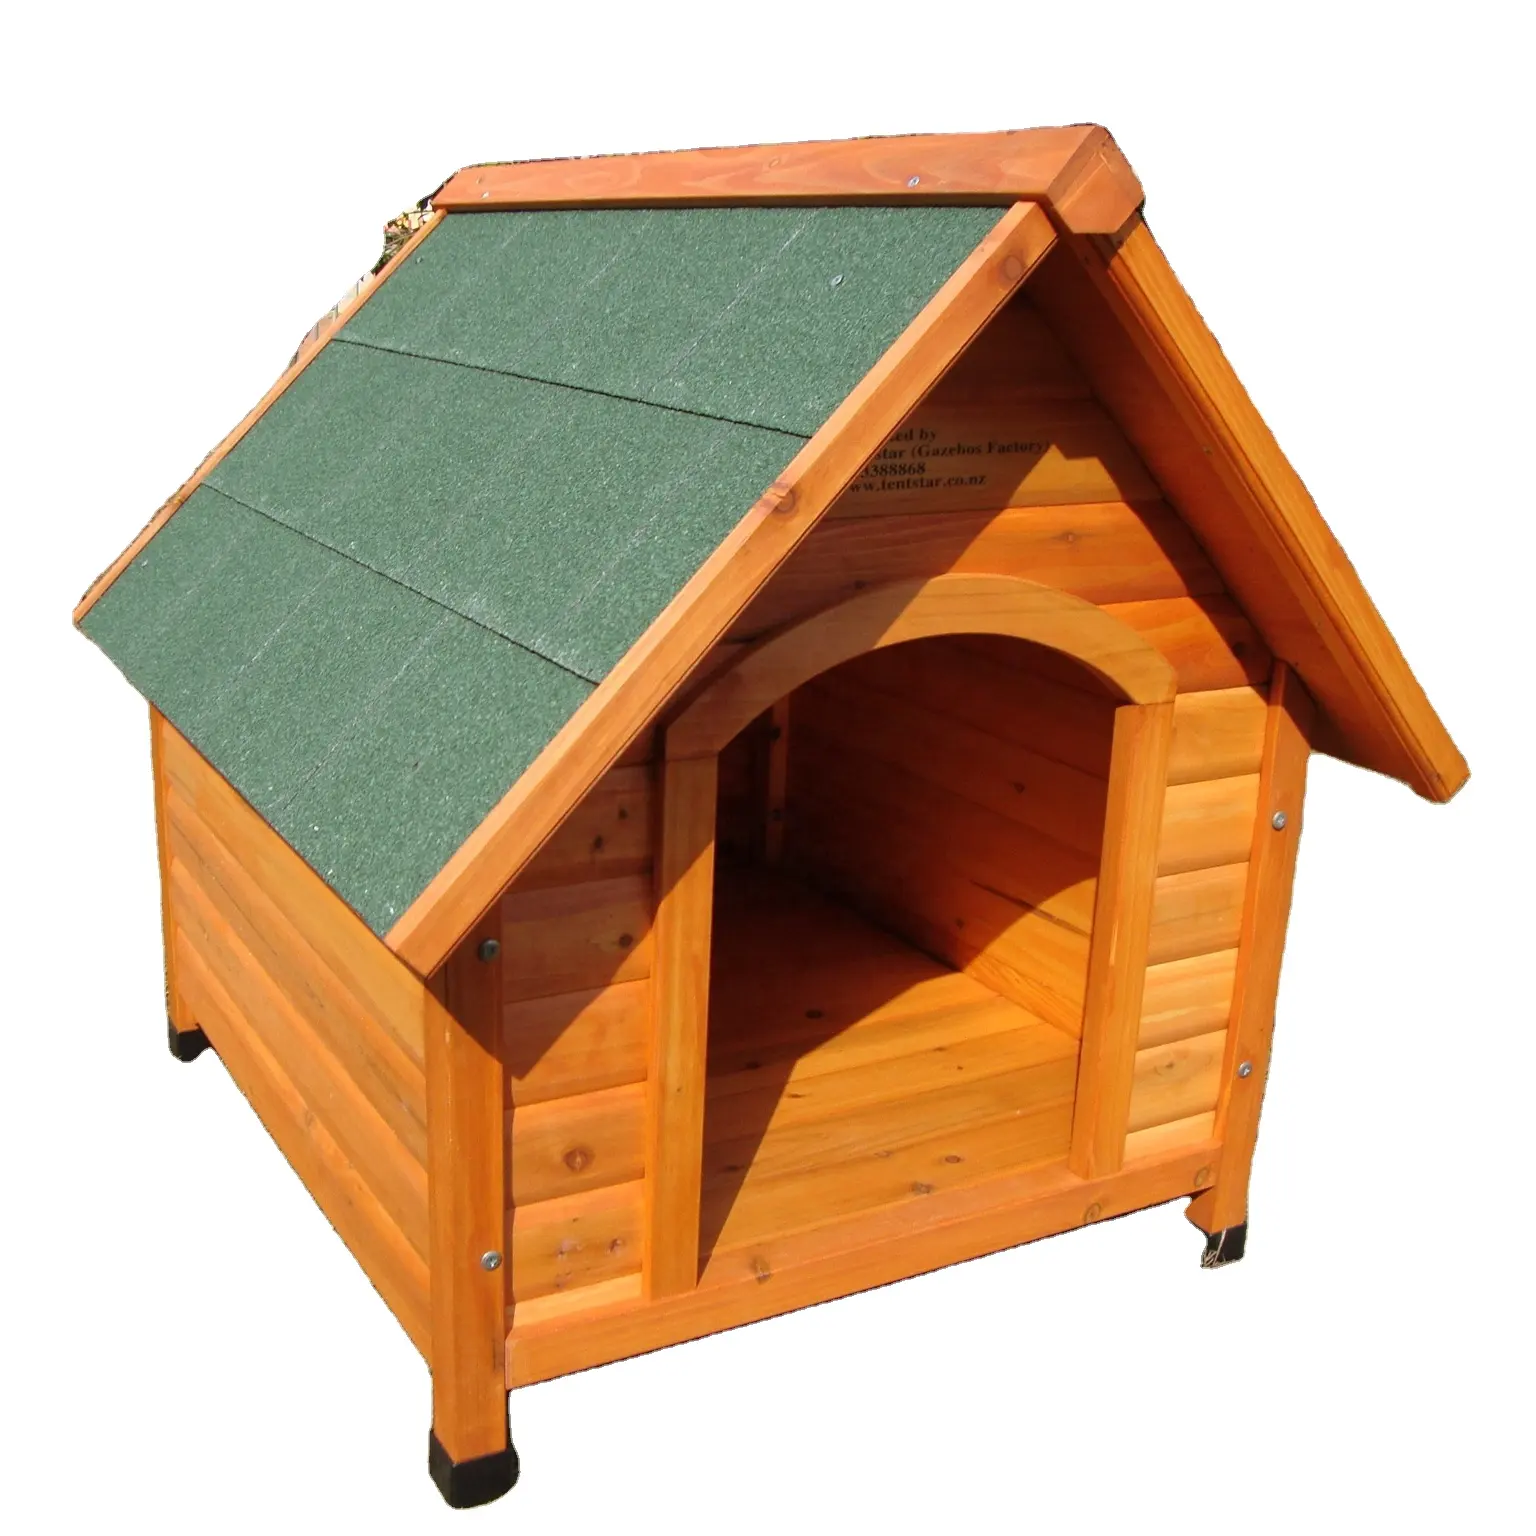 Cuccia per cani in legno con tetto apribile e piedini regolabili